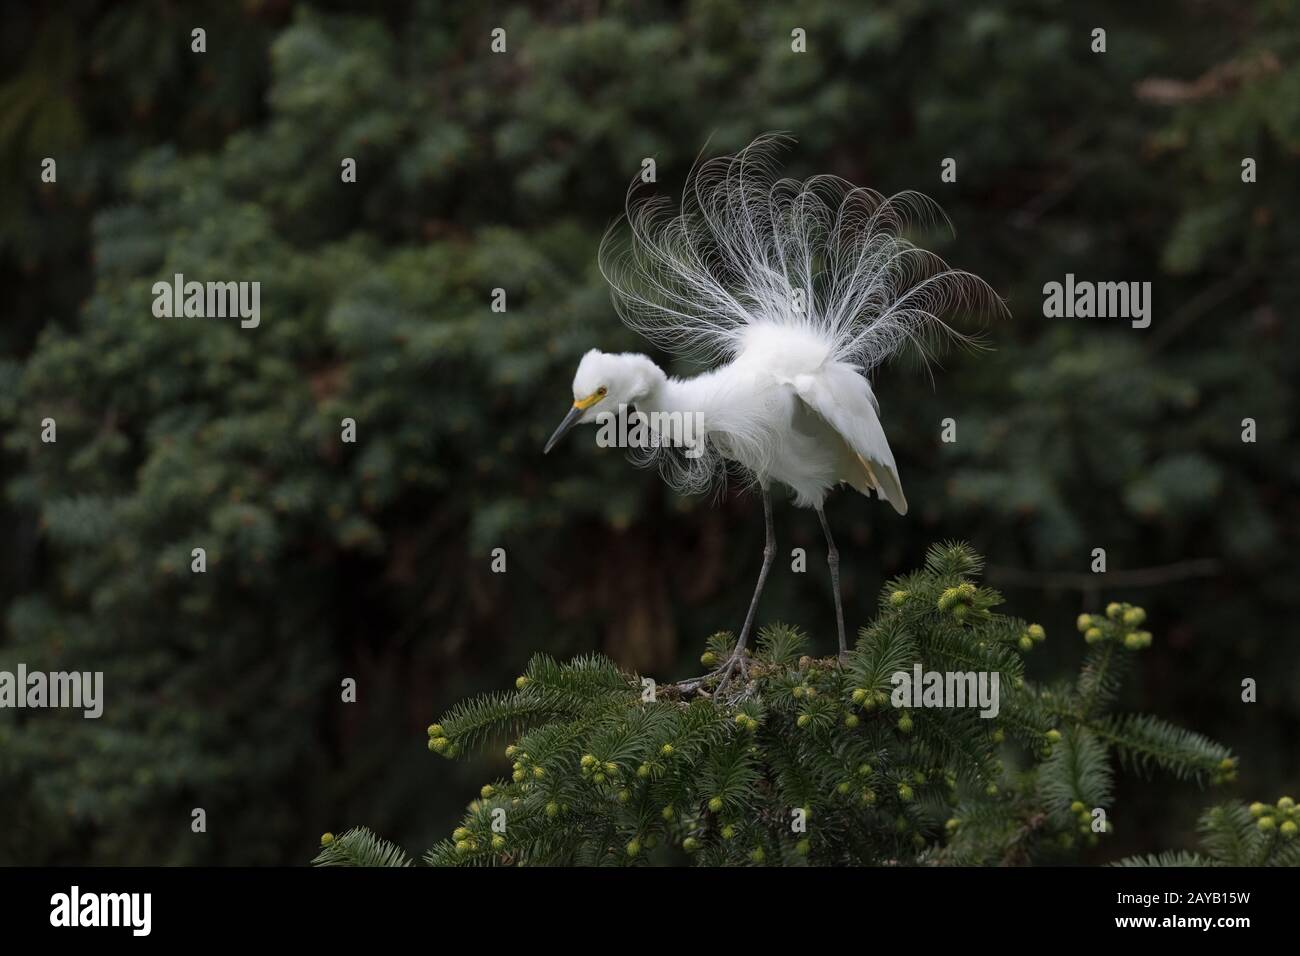 great white heron displaying breeding plumage Stock Photo